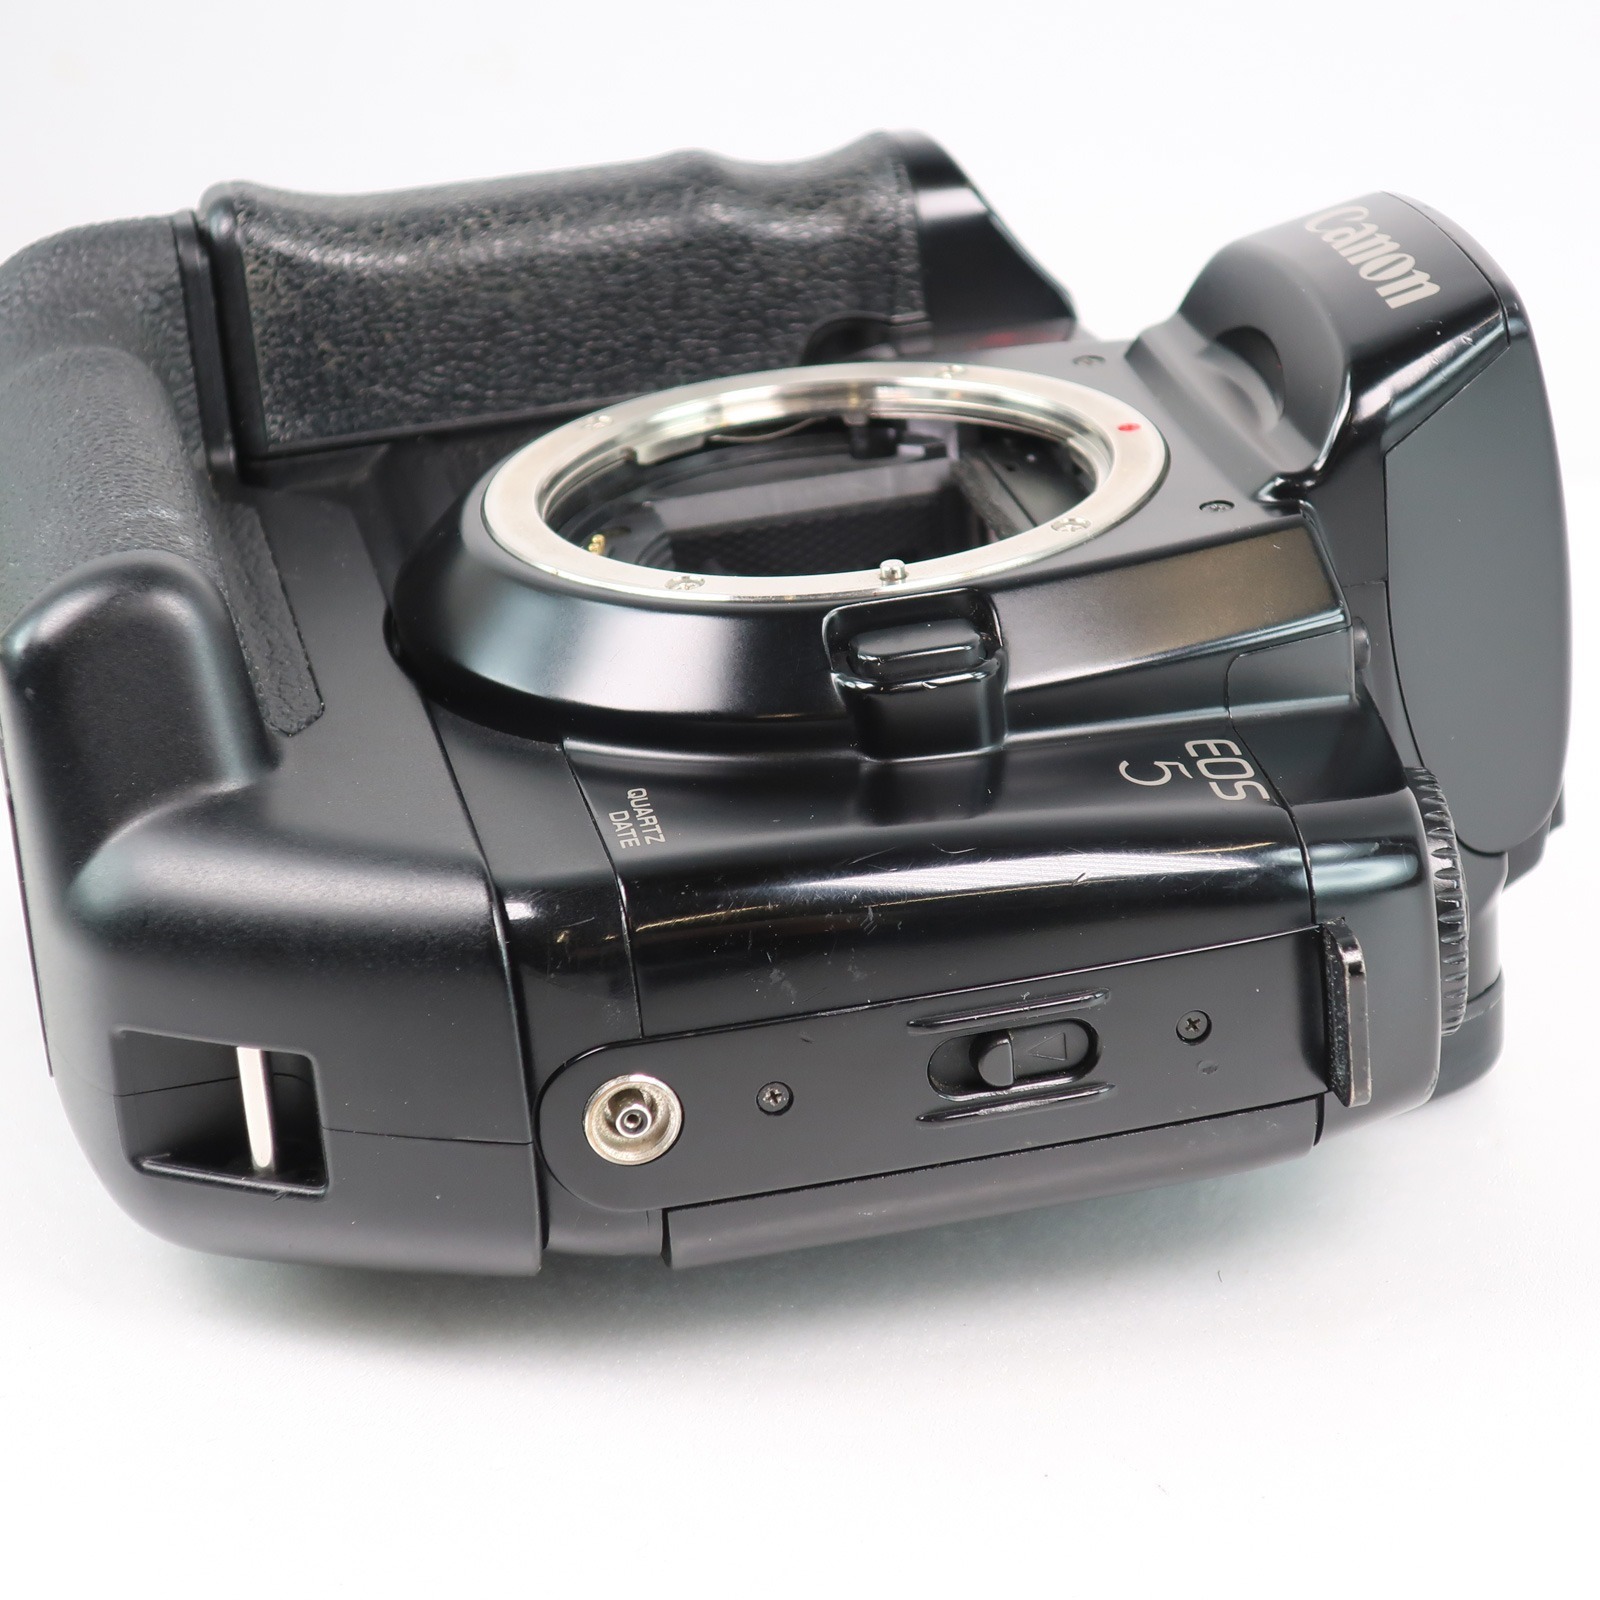 キヤノン EOS5 QD Quartz Date with VERTICAL GRIP VG10 _ フィルムカメラ【中古】 |  質にしきの【ブランド販売・買取】